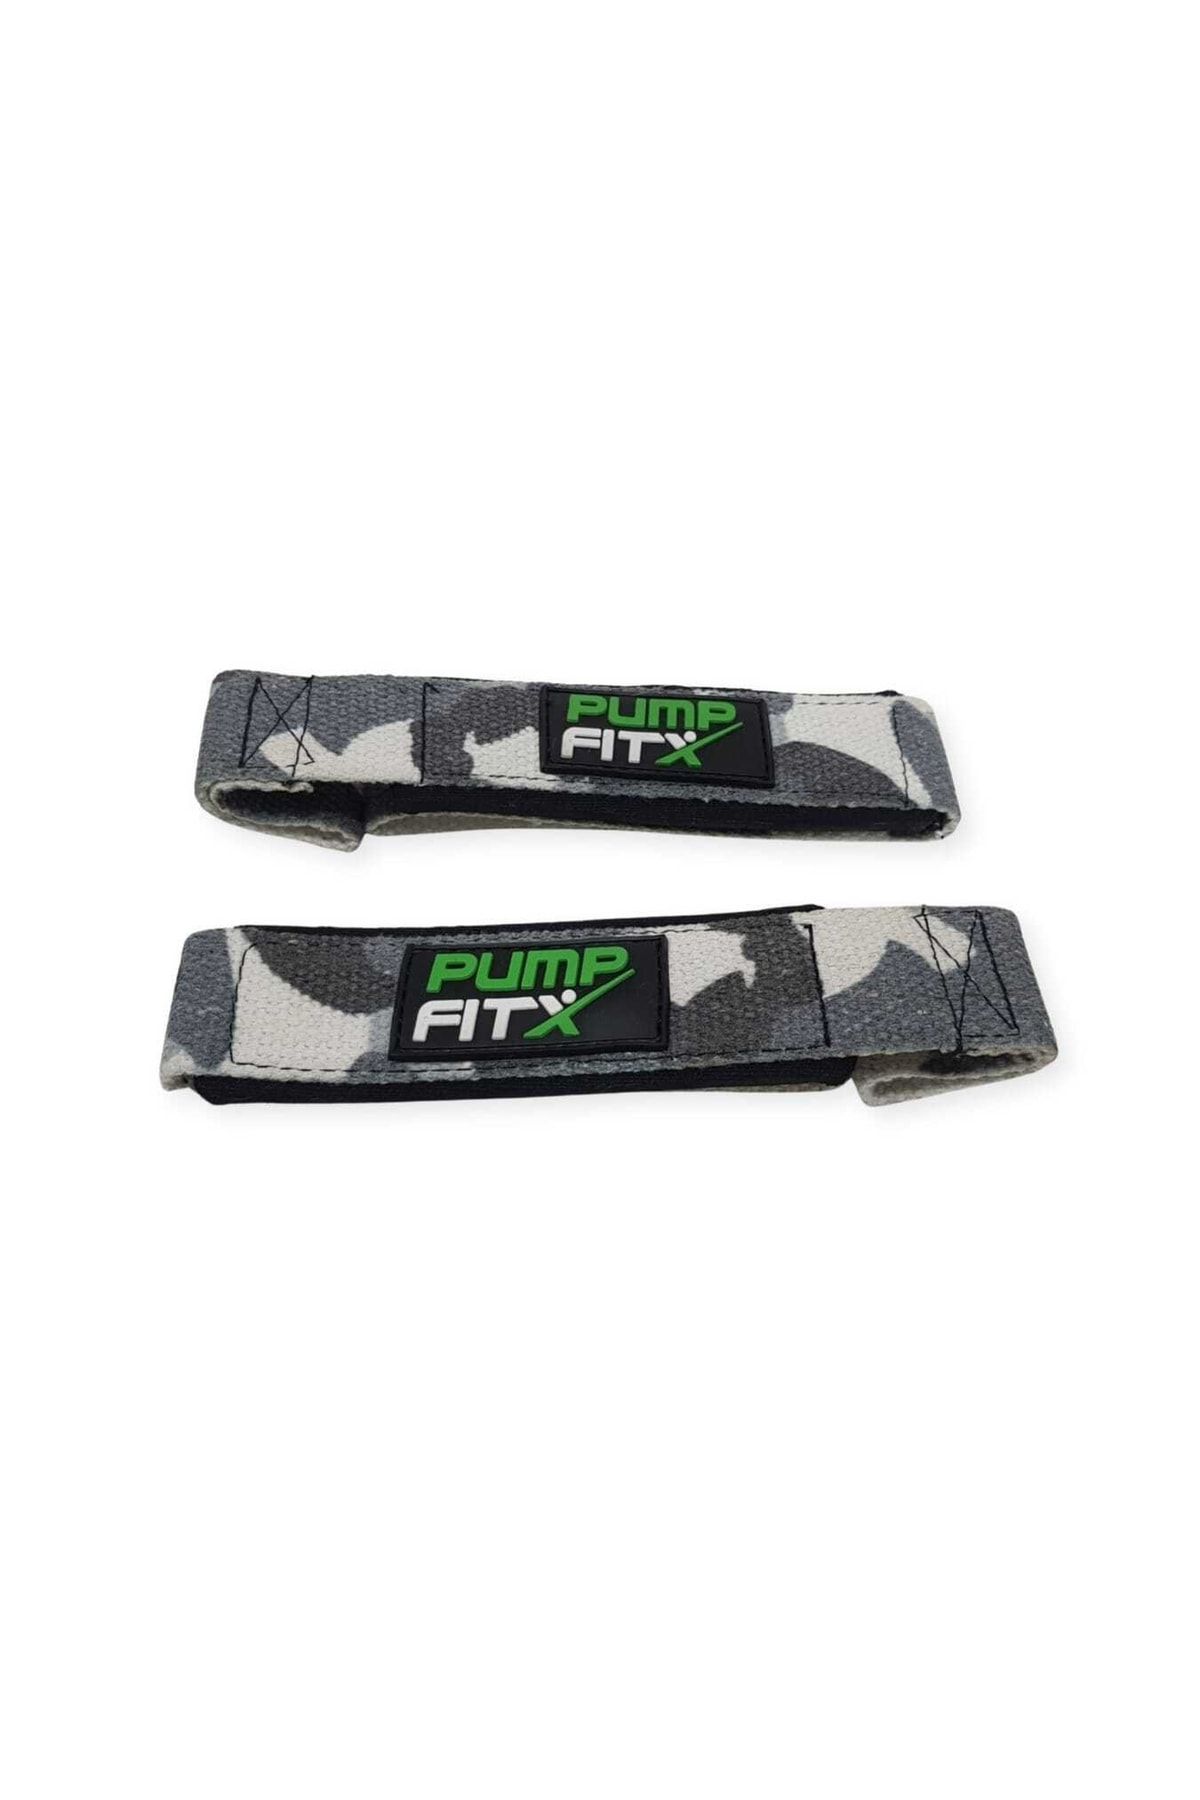 PUMP FITX Ağırlık Kayışı - Fitness Ağırlık Destek Bilekliği - Wrist Straps - Gri Desenli (1 Çift)